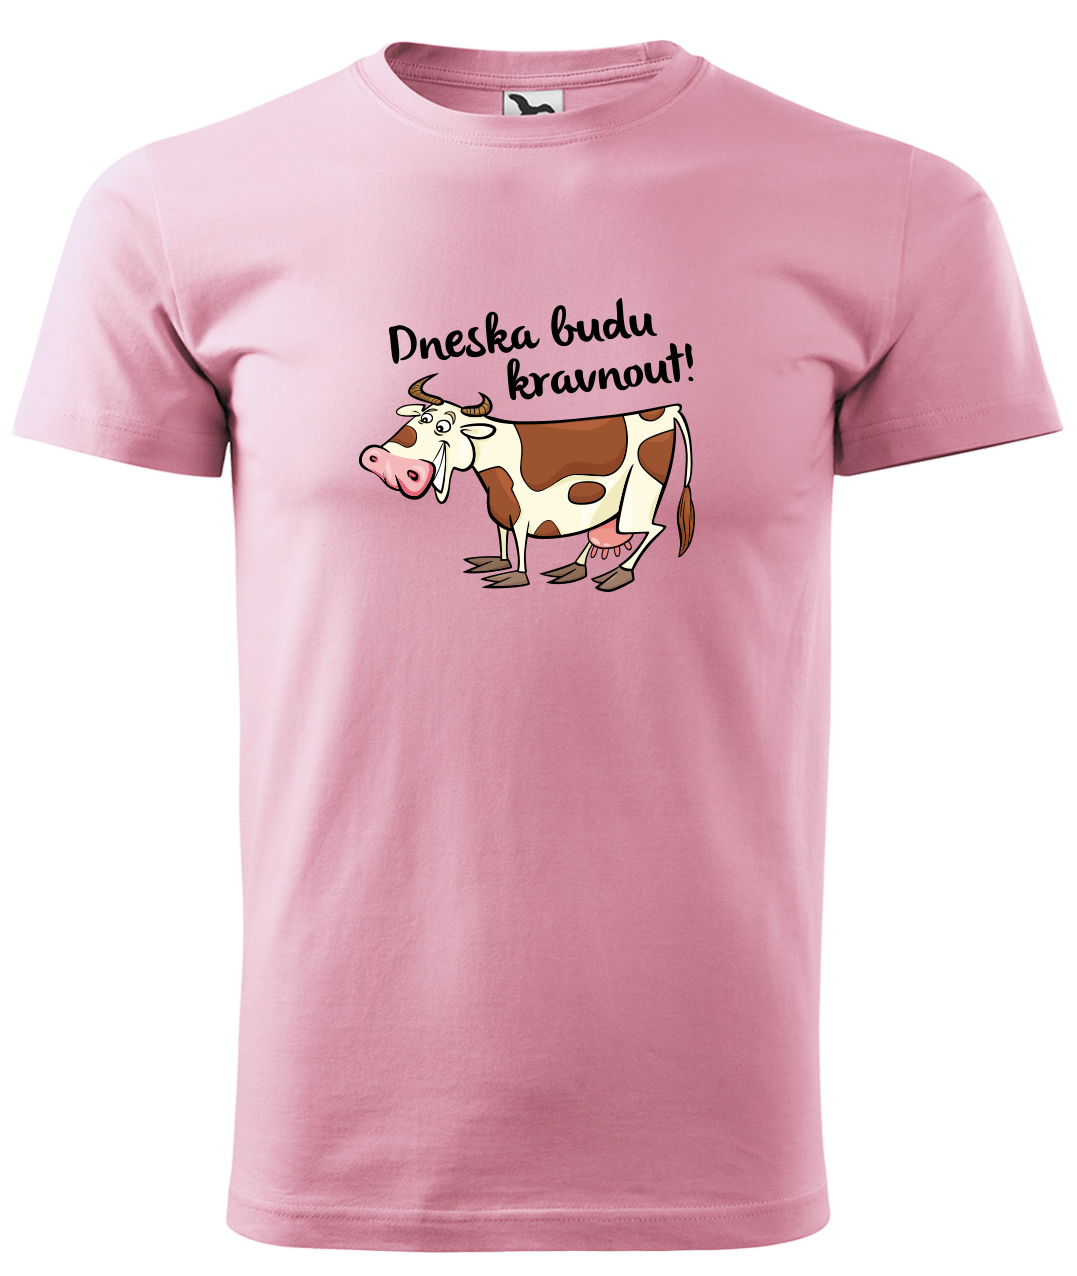 Dětské tričko s krávou - Dneska budu kravnout! Velikost: 4 roky / 110 cm, Barva: Růžová (30), Délka rukávu: Krátký rukáv